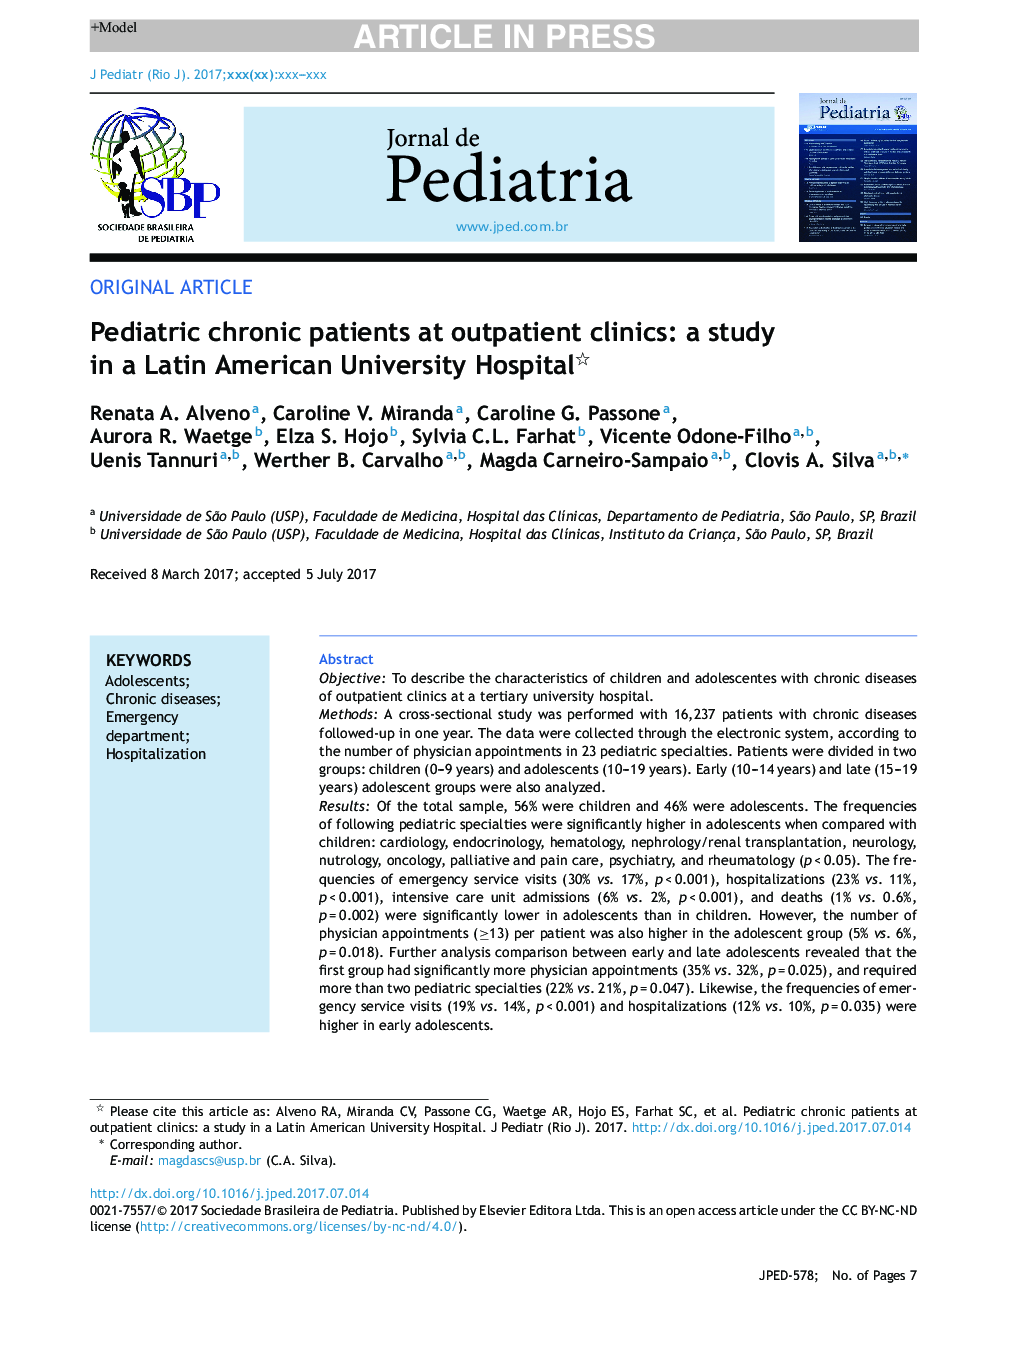 بیماران مزمن کودکان در کلینیک های سرپایی: یک مطالعه در بیمارستان دانشگاه آمریکای لاتین